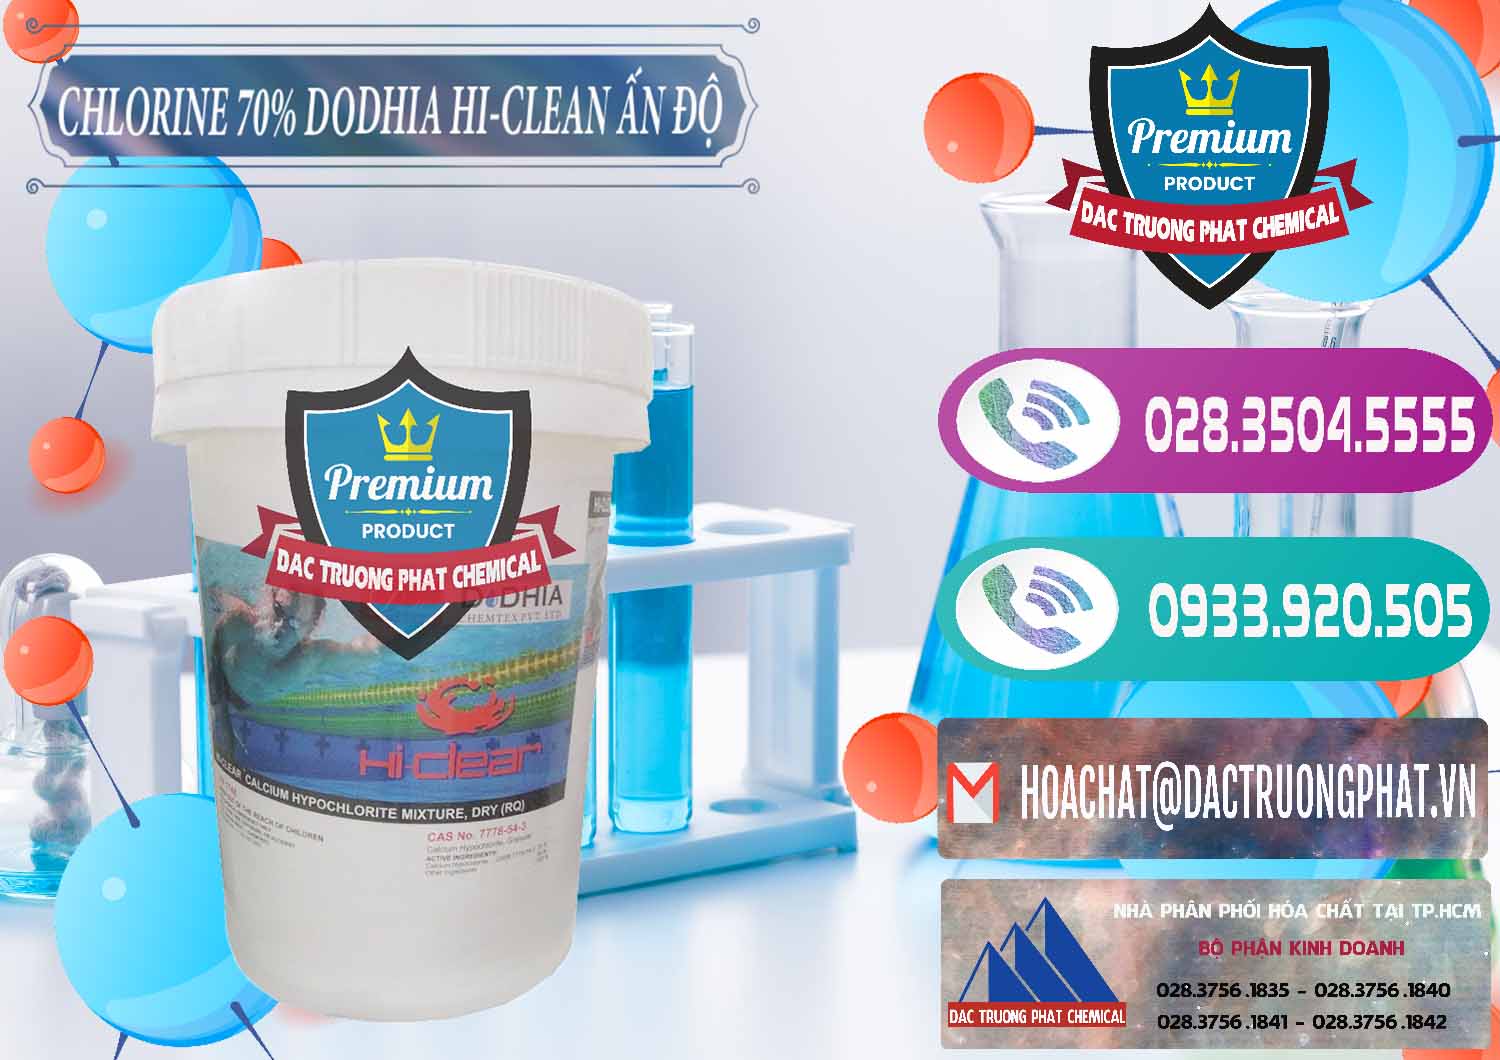 Đơn vị chuyên bán - cung cấp Chlorine – Clorin 70% Dodhia Hi-Clean Ấn Độ India - 0214 - Cty chuyên phân phối & cung ứng hóa chất tại TP.HCM - hoachatxulynuoc.com